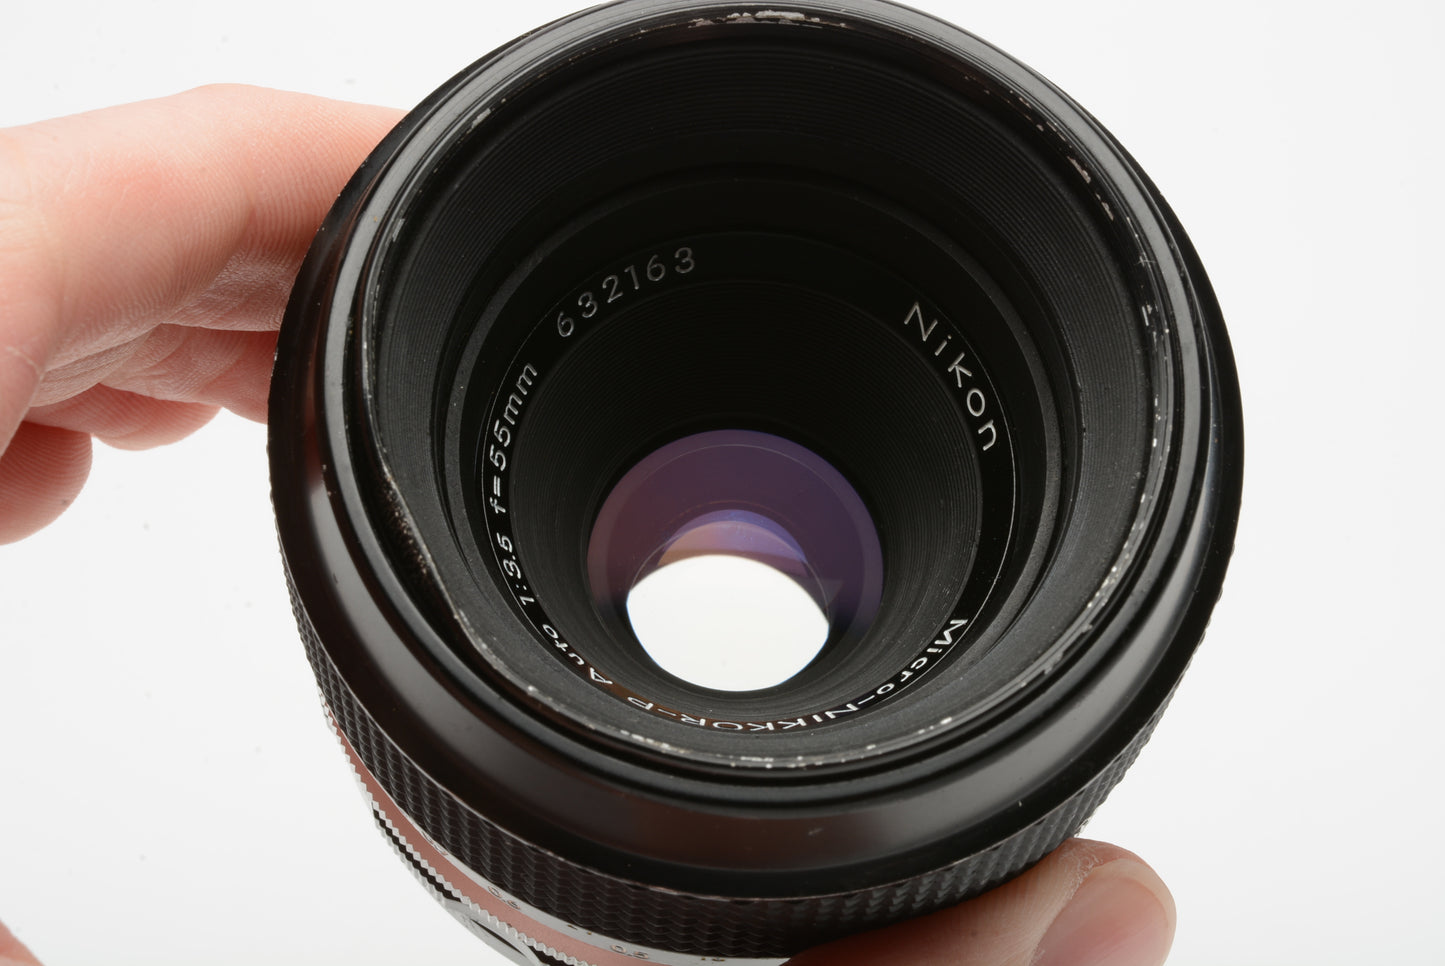 Nikon Micro-Nikkor-P 55mm f3.5 close-focusing macro lens